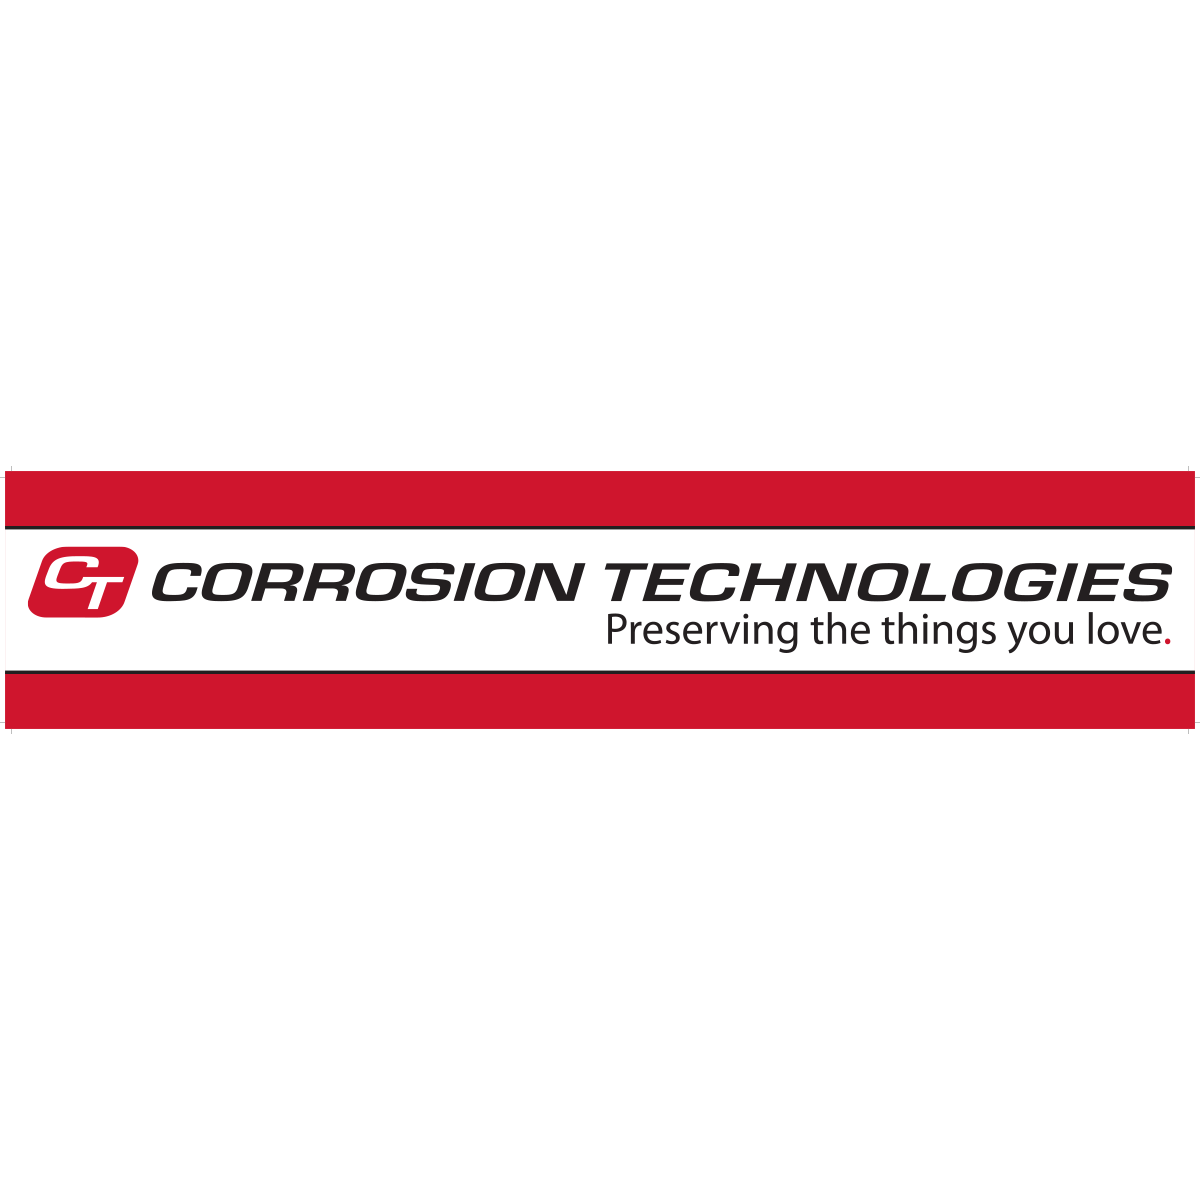 Tarjeta de encabezado de estante minorista de Corrosion Technologies